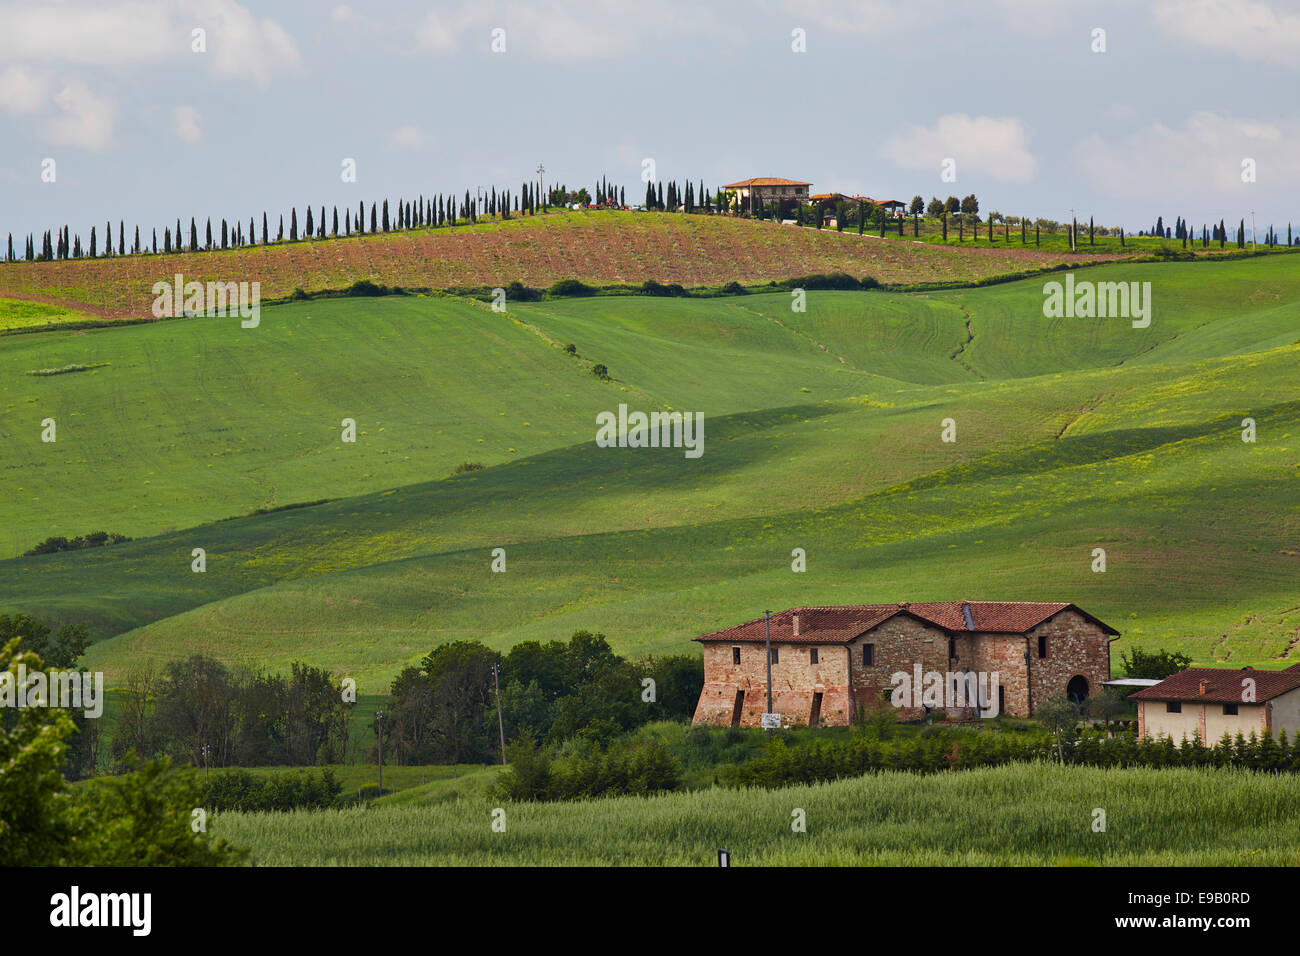 Hilly landscape of the Crete Senesi, Asciano, Arbia, Tuscany, Italy Stock Photo